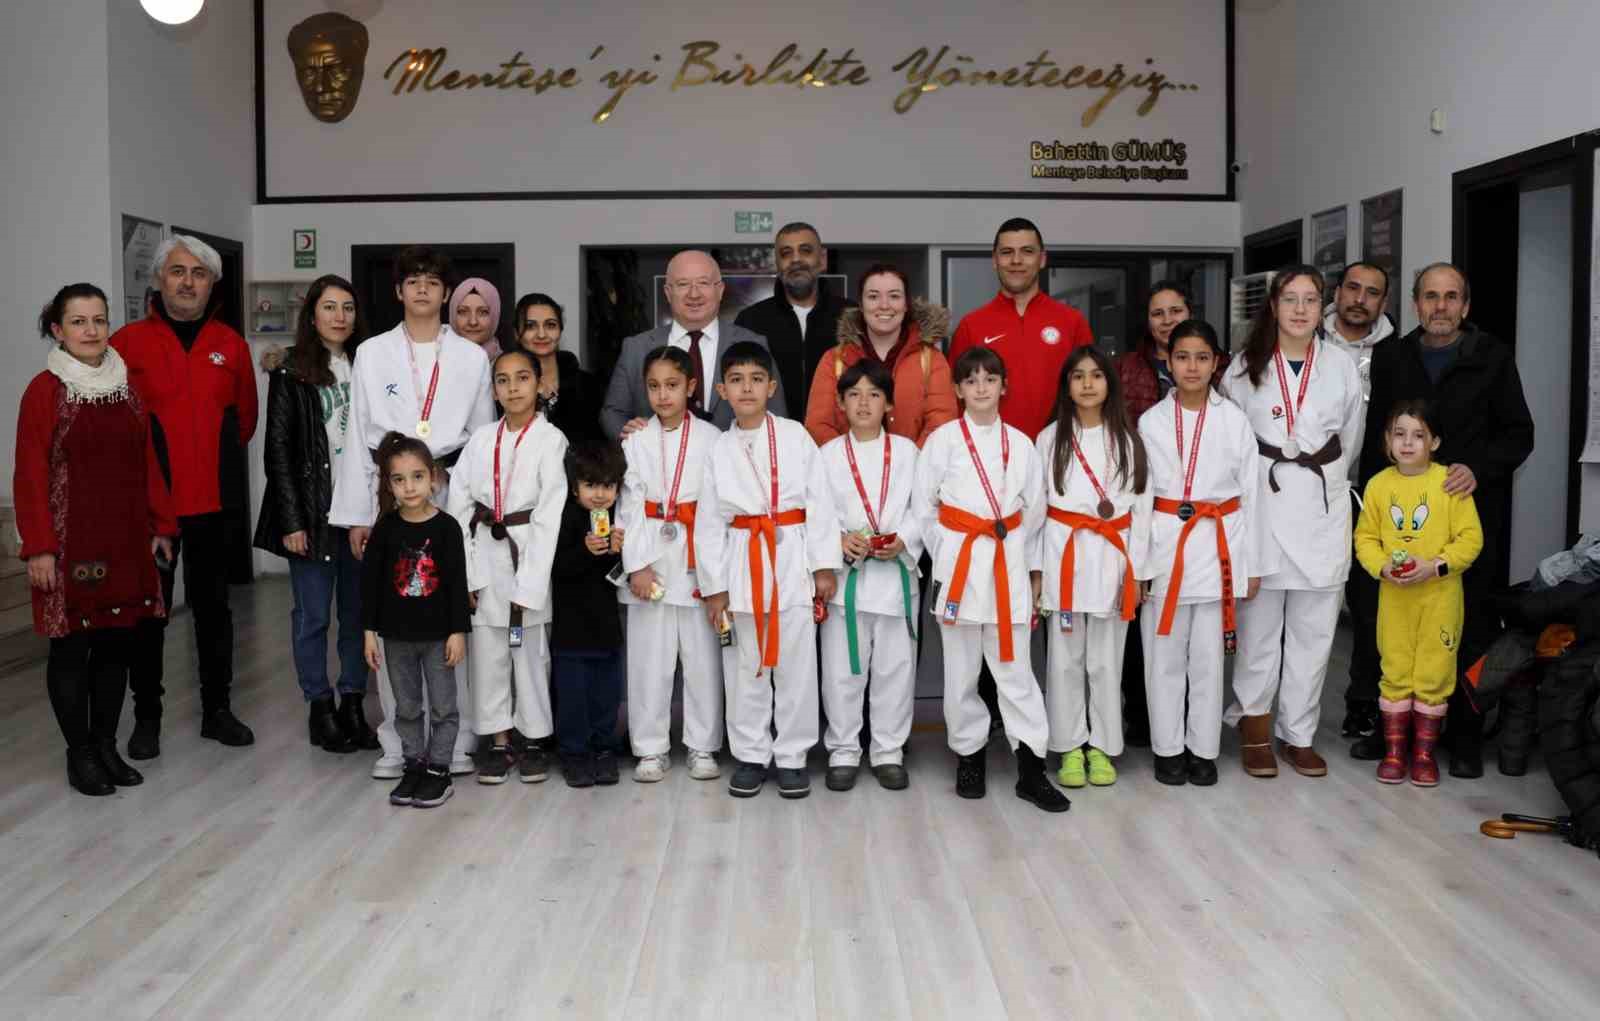 Şampiyon karateciler Başkan Gümüş’ü ziyaret etti